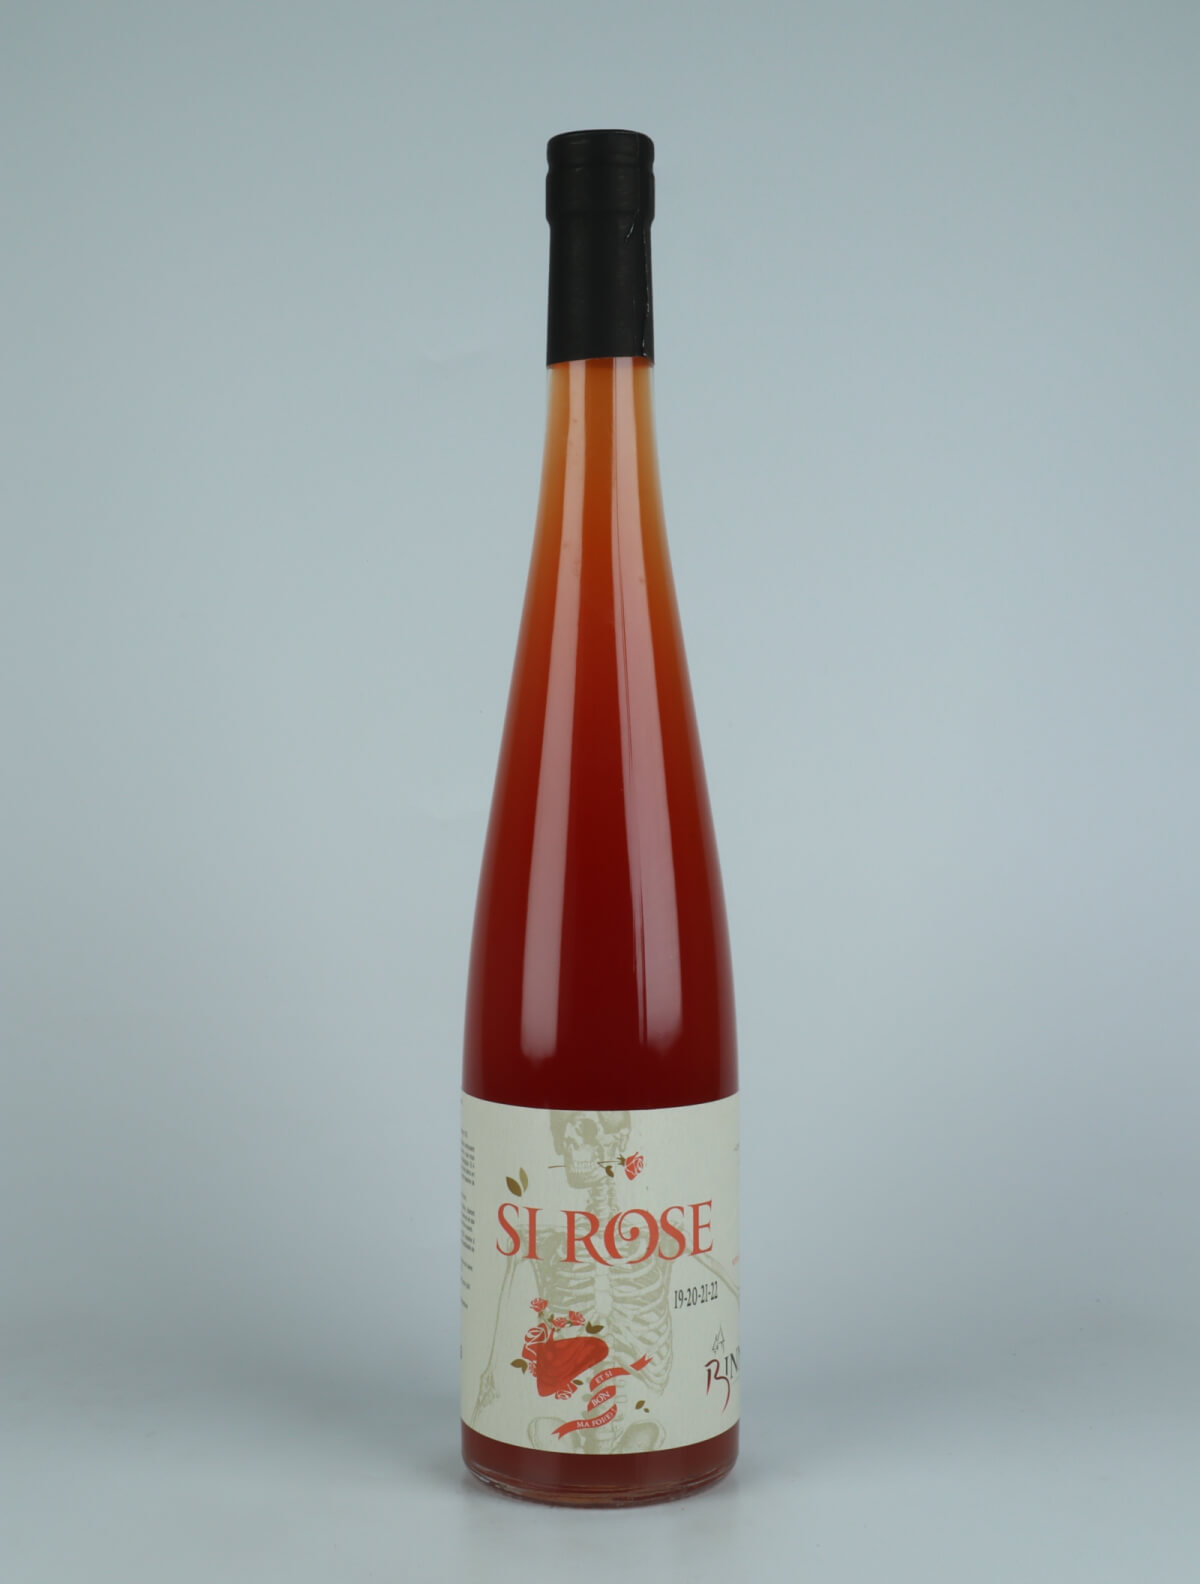 En flaske N.V. Si Rose (19/20/21) Orange vin fra Domaine Christian Binner, Alsace i Frankrig